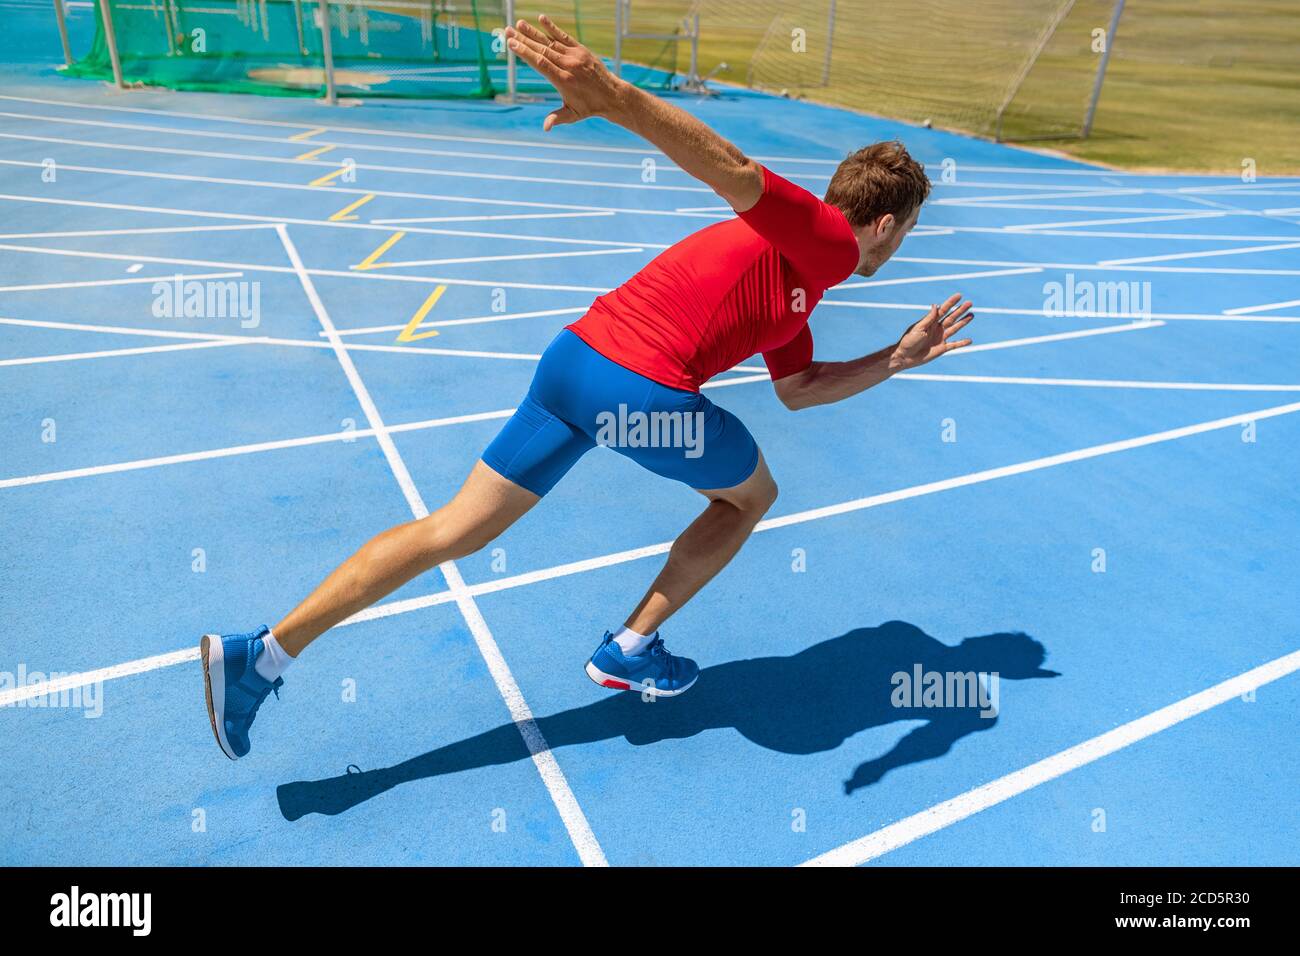 Laufsportler beginnt mit dem Laufen zu Beginn der Laufstrecke auf blauen Laufstrecken in der Leichtathletik und im Feldstadion. Sprinter im Rennen. Sport und Stockfoto